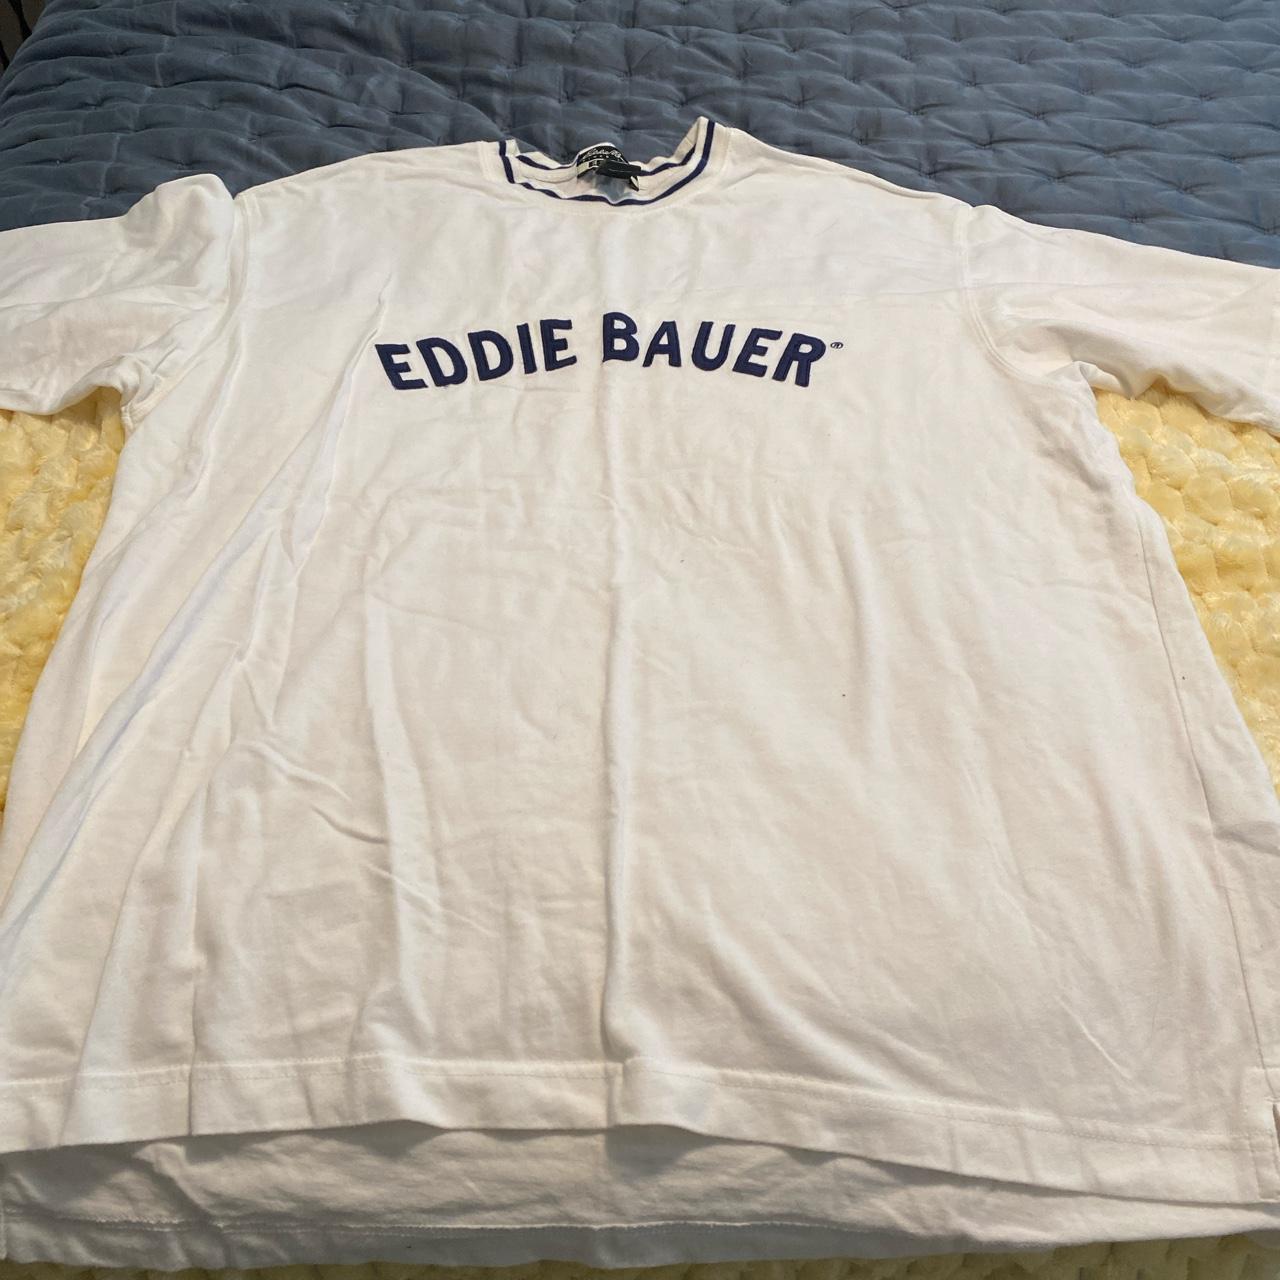 Vintage Eddie Bauer T shirt Eddie Bauer vintage - Depop